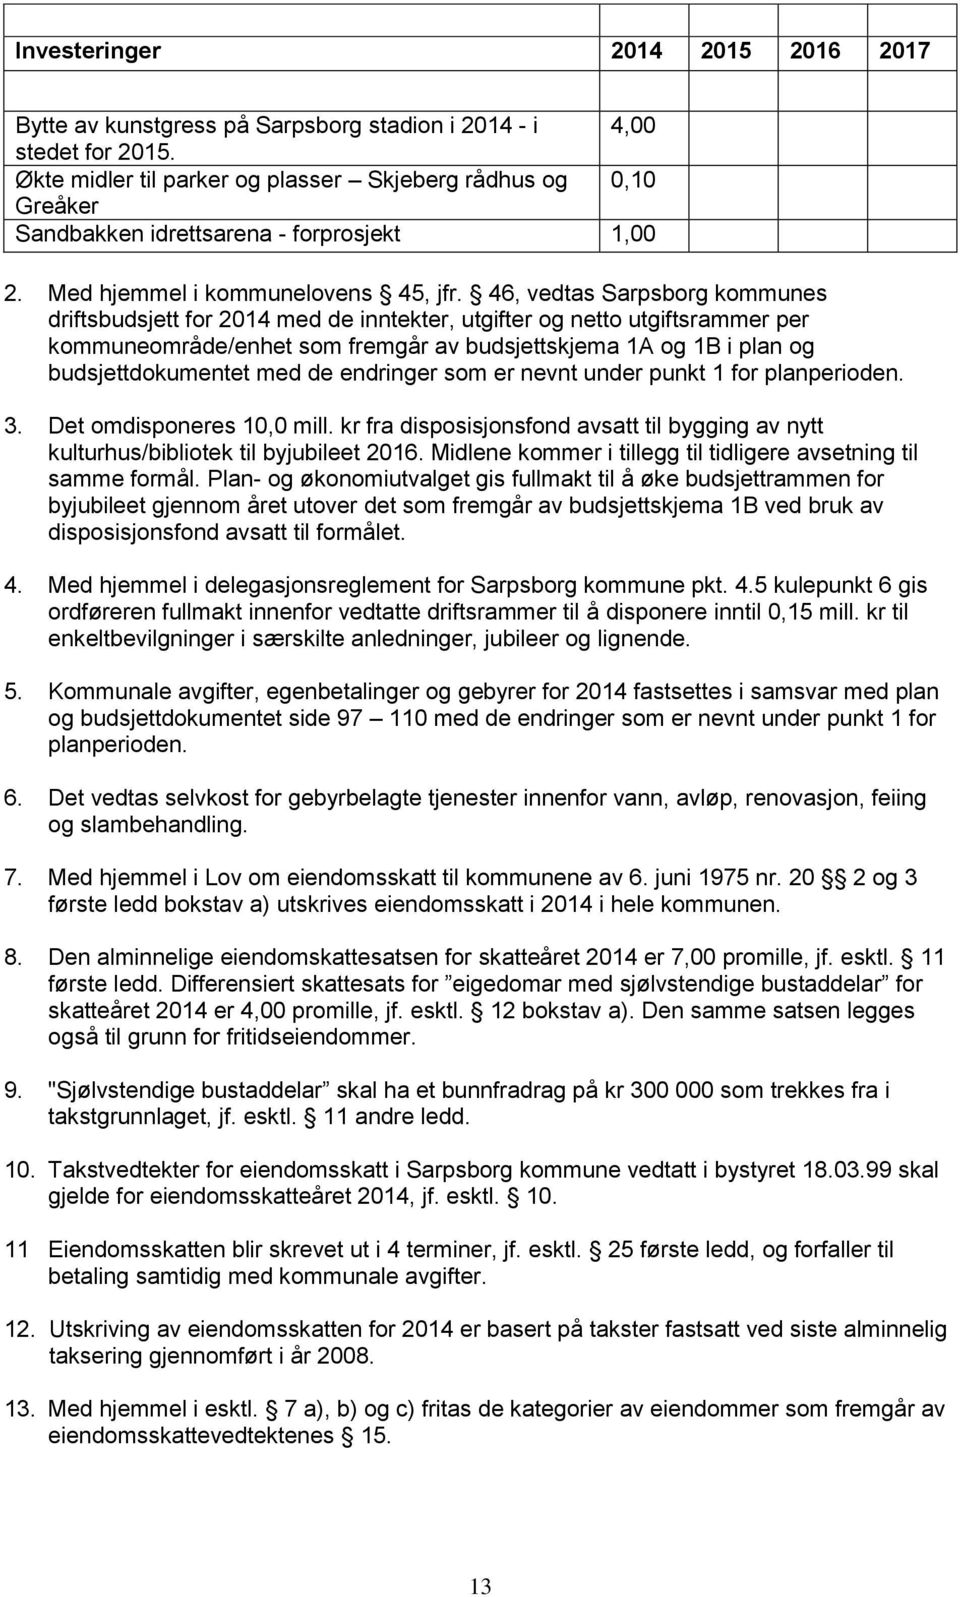 46, vedtas Sarpsborg kommunes driftsbudsjett for 2014 med de inntekter, utgifter og netto utgiftsrammer per kommuneområde/enhet som fremgår av budsjettskjema 1A og 1B i plan og budsjettdokumentet med